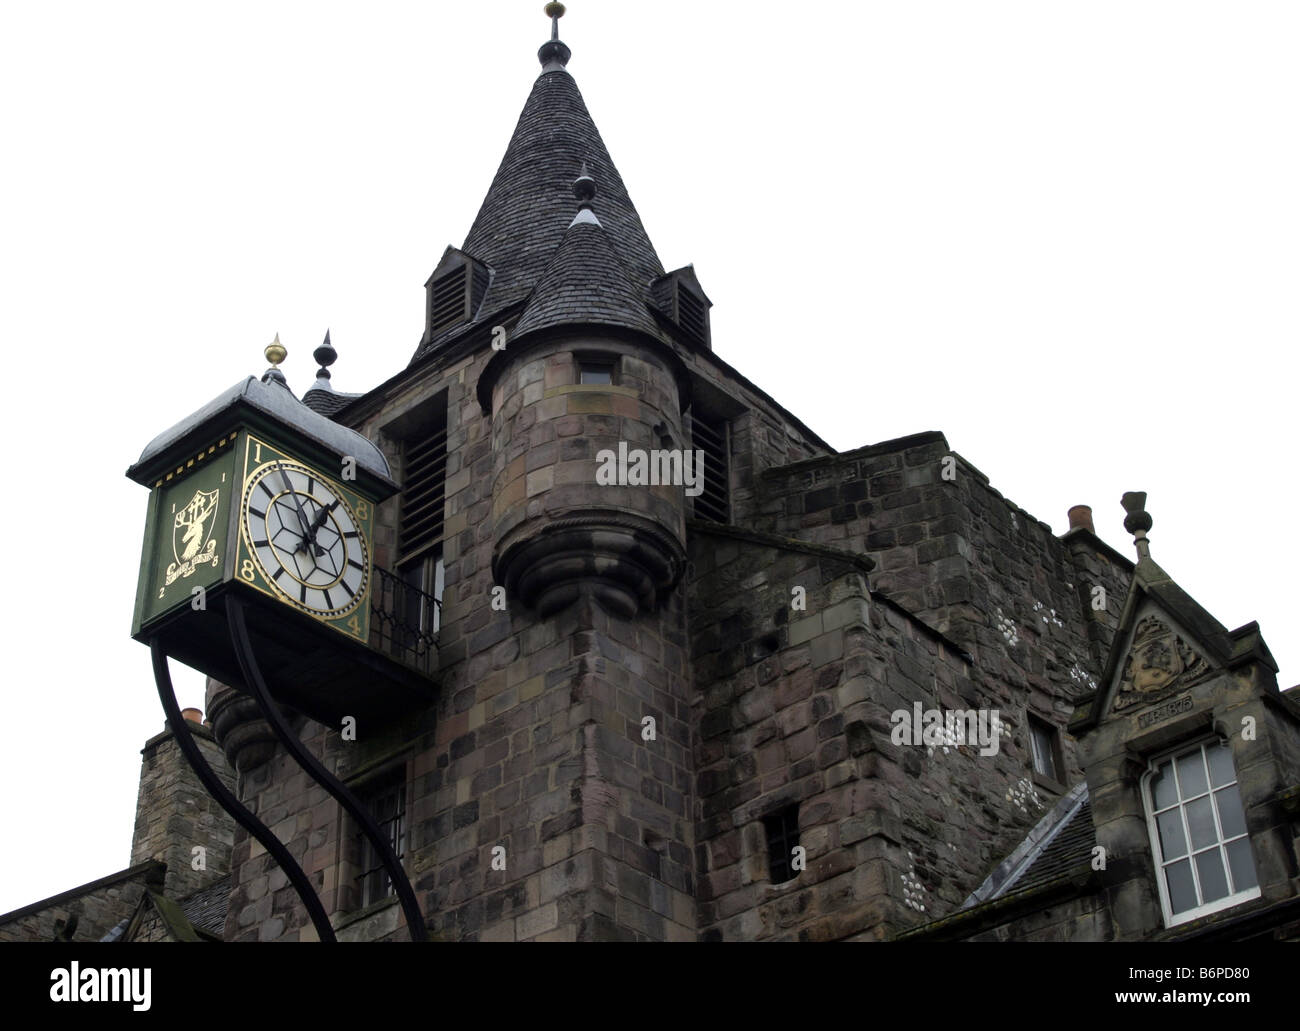 Dettagli architettonici di un vecchio edificio a Edimburgo in Scozia Foto Stock